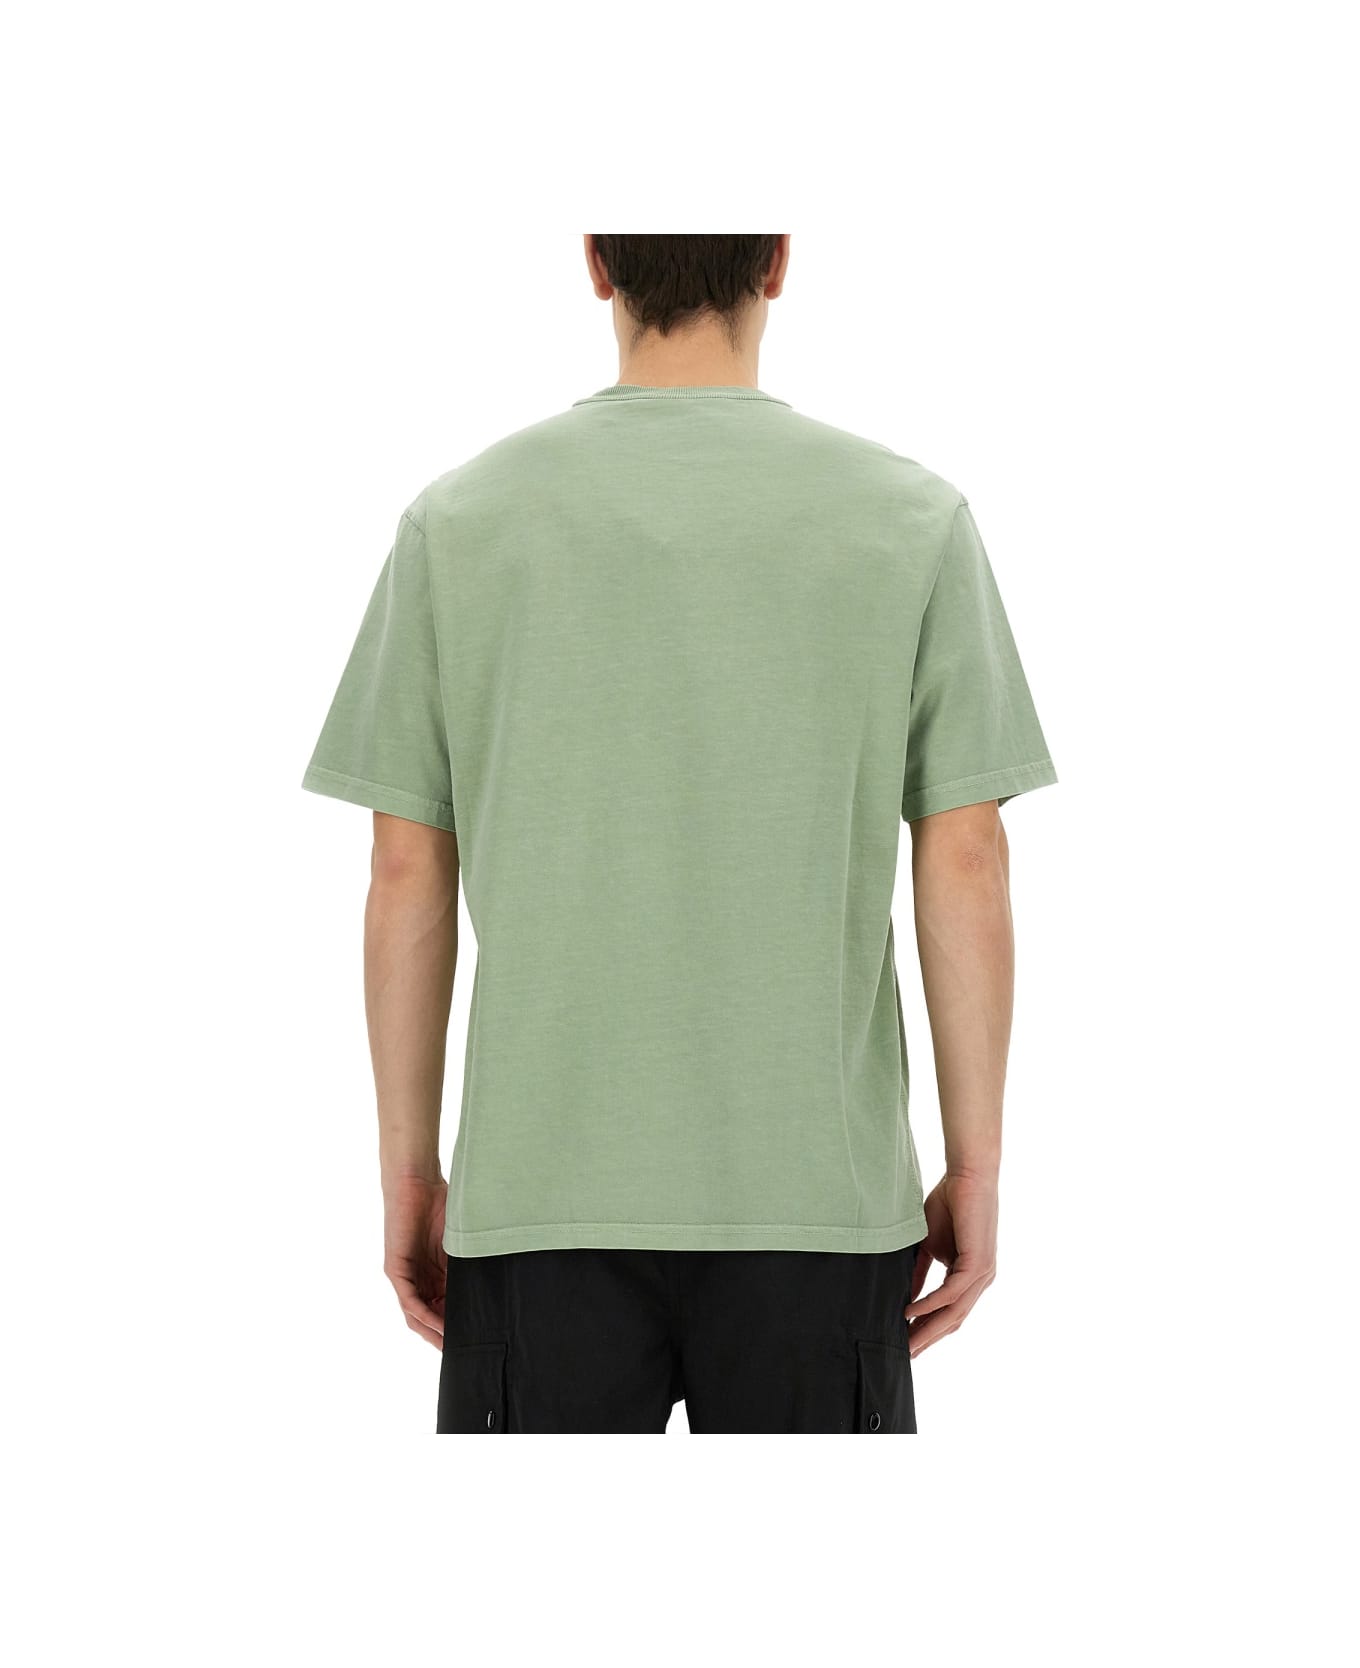 Belstaff T-shirt With Logo - GREEN シャツ